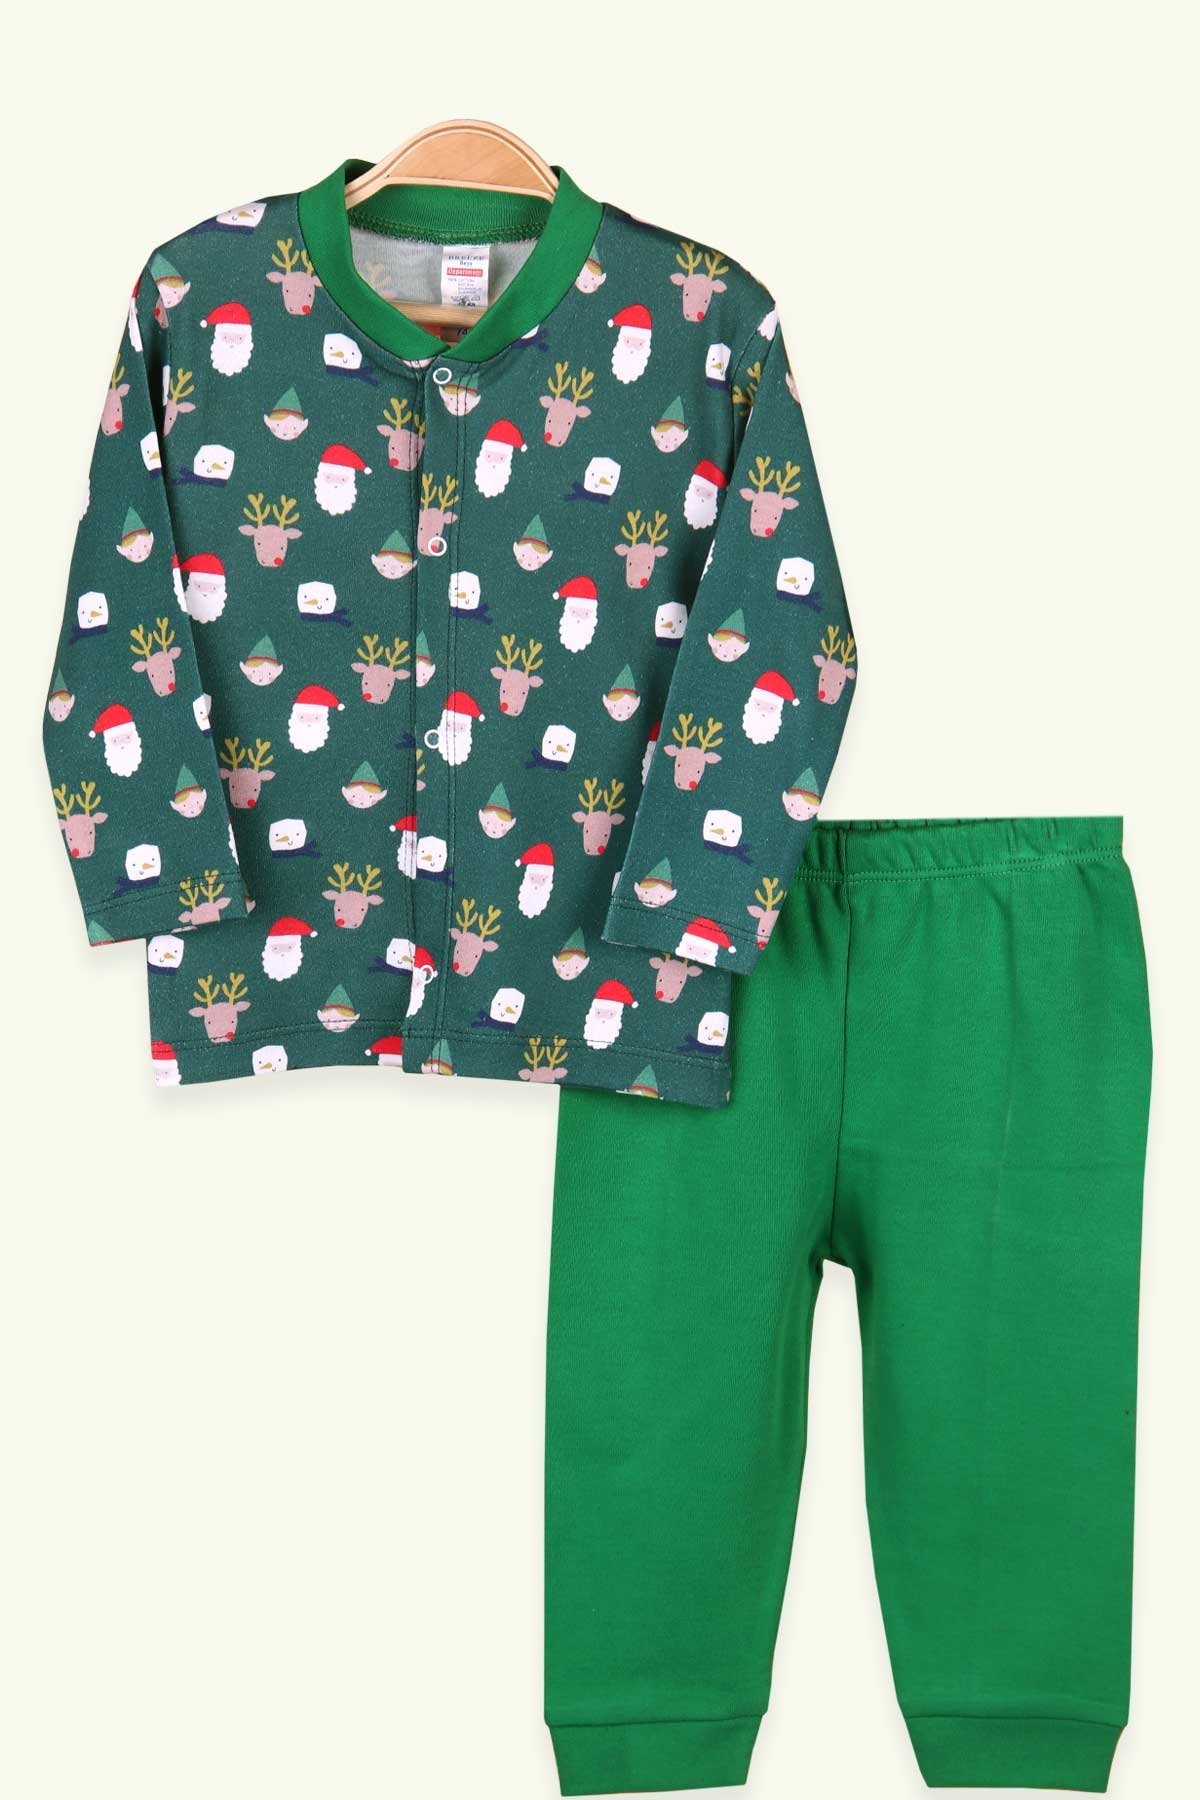 Erkek Bebek Pijama Takımı Yılbaşı Temalı Koyu Yeşil 4 Ay - Yumuşak Kumaş |  Breeze